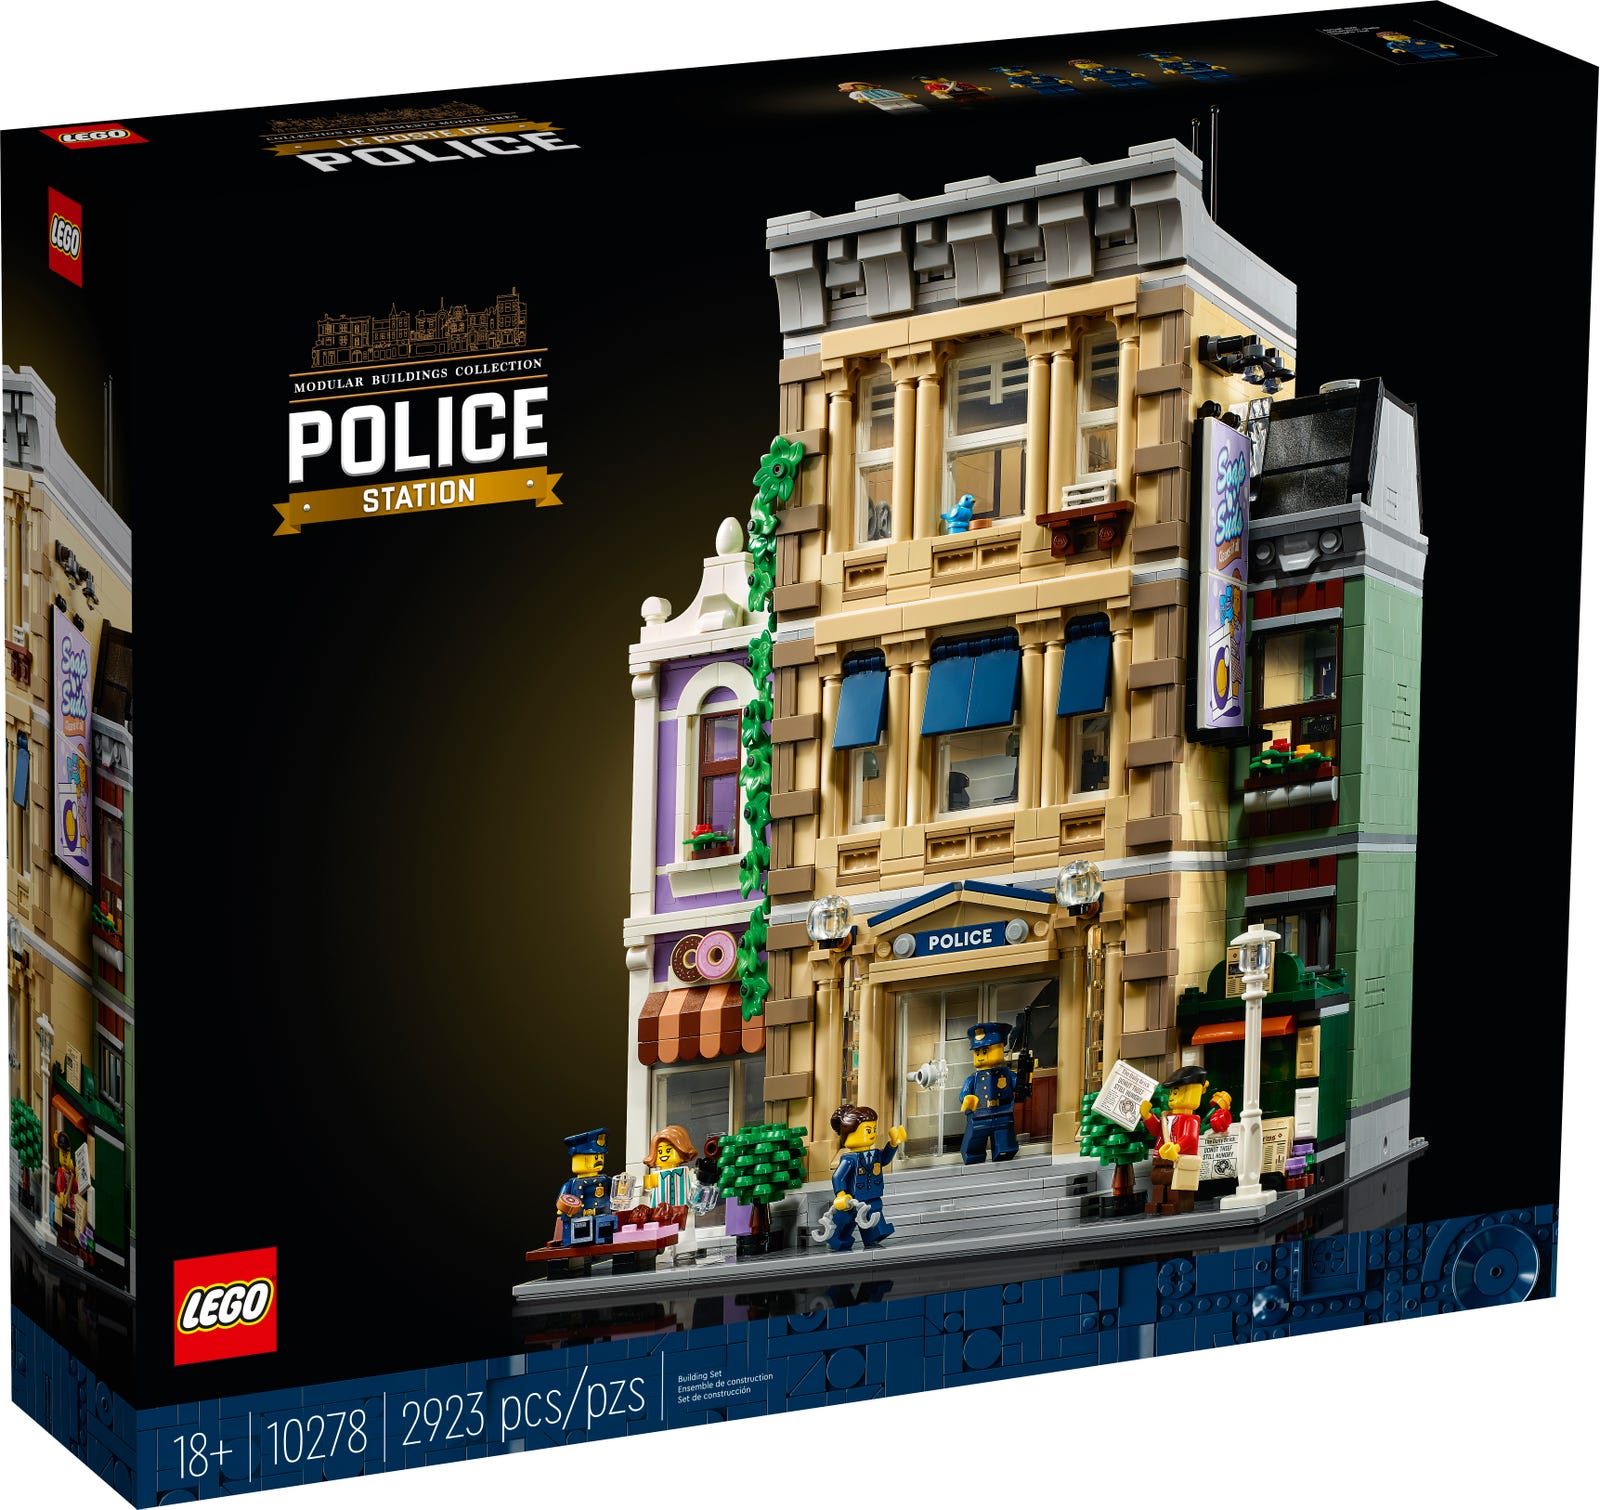 LEGO CREATOR EXPERT STAZIONE DELLA POLIZIA 10278